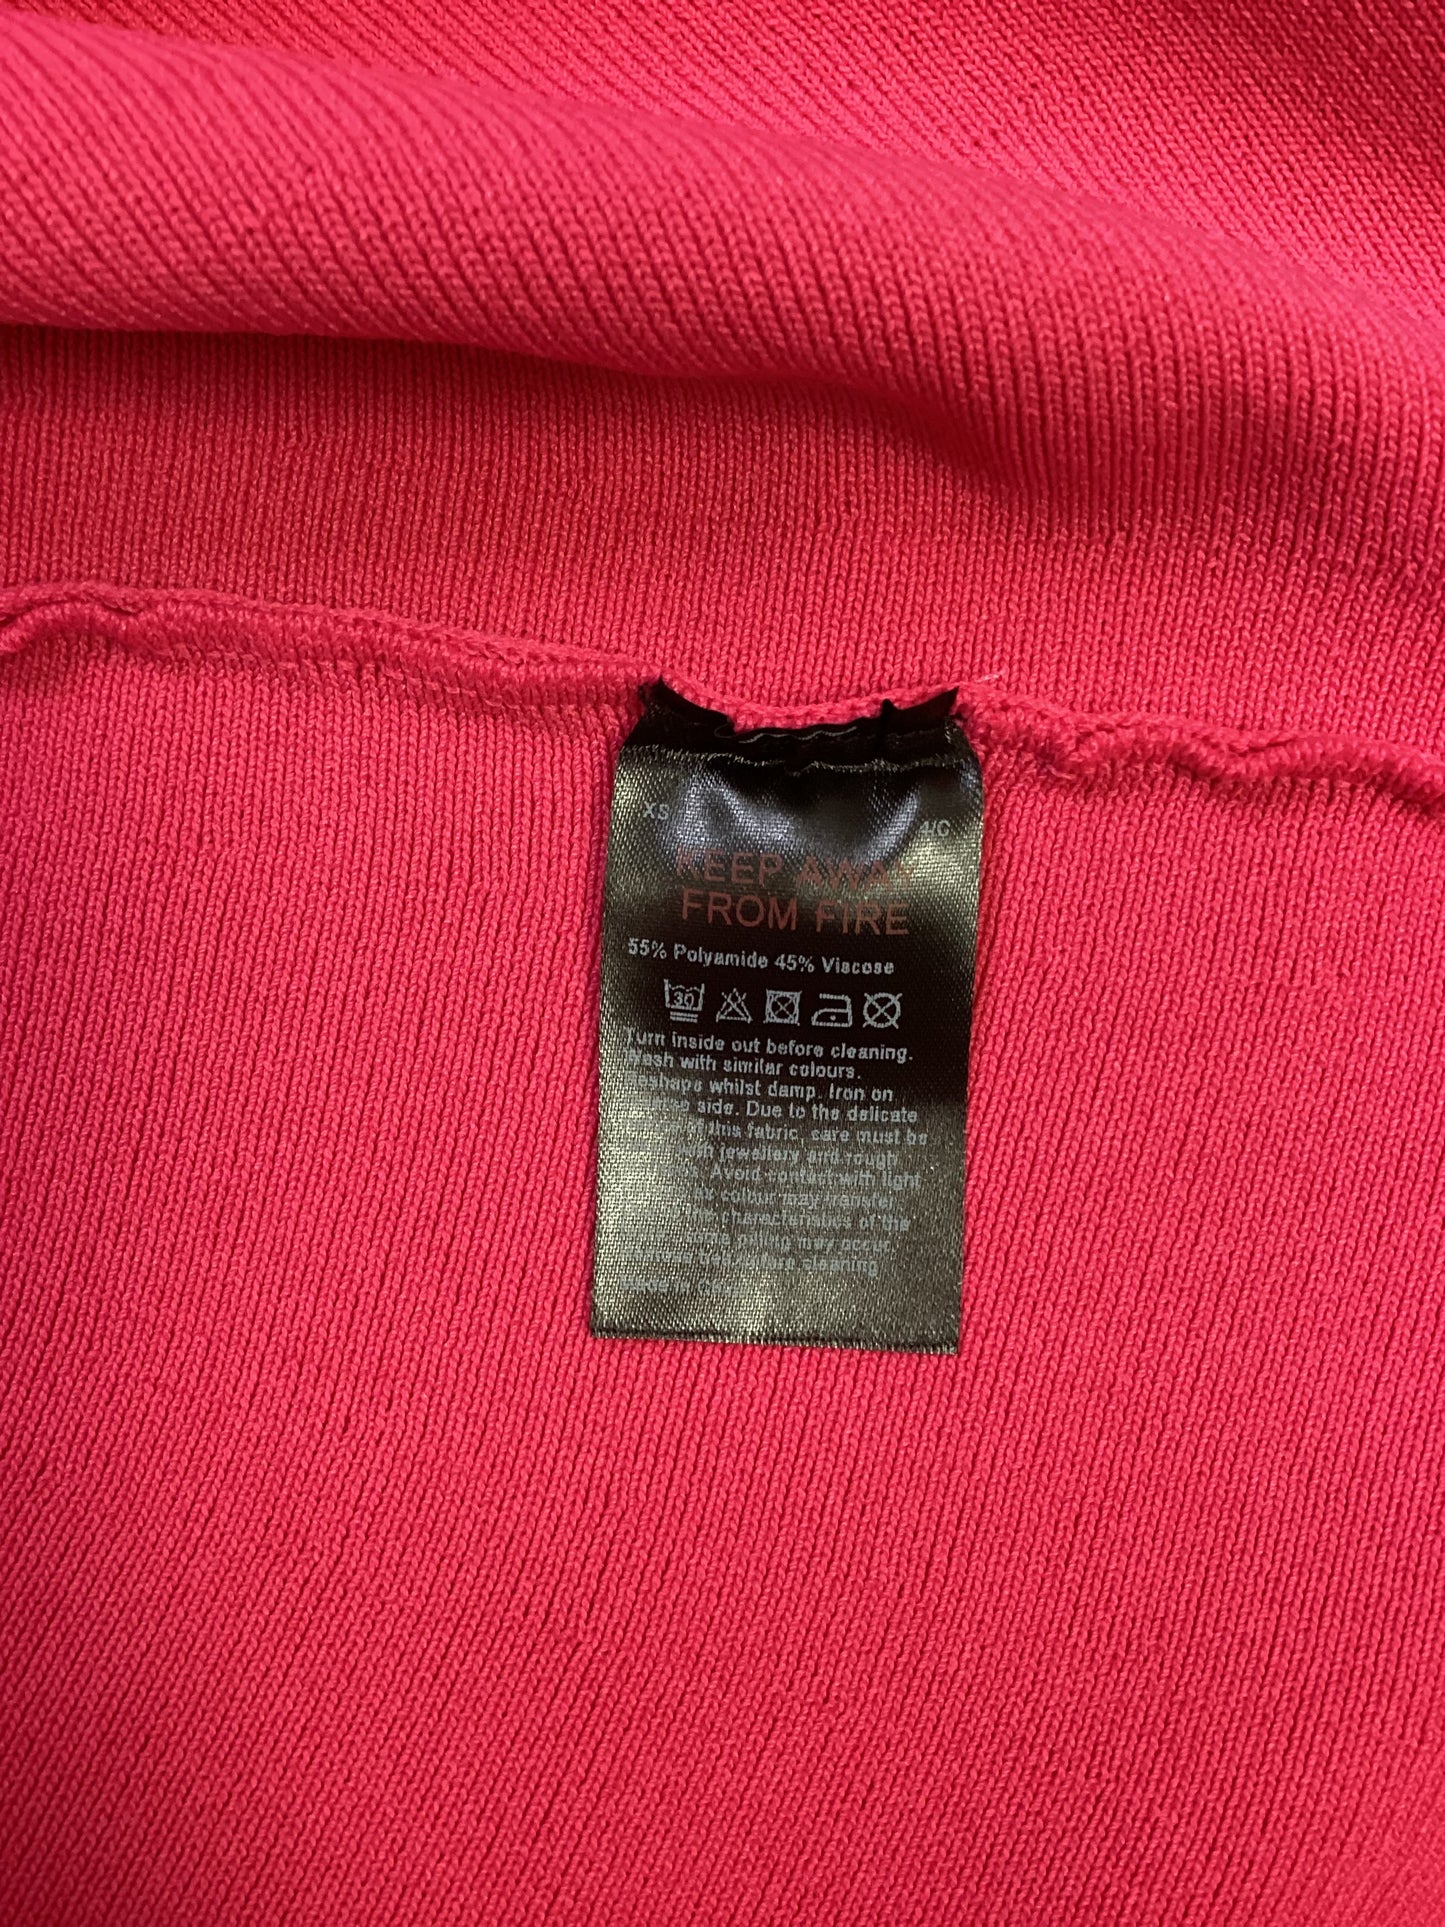 BNWT Karen Millen Long Sleeved Pink Dress Size XS - Missing Belt